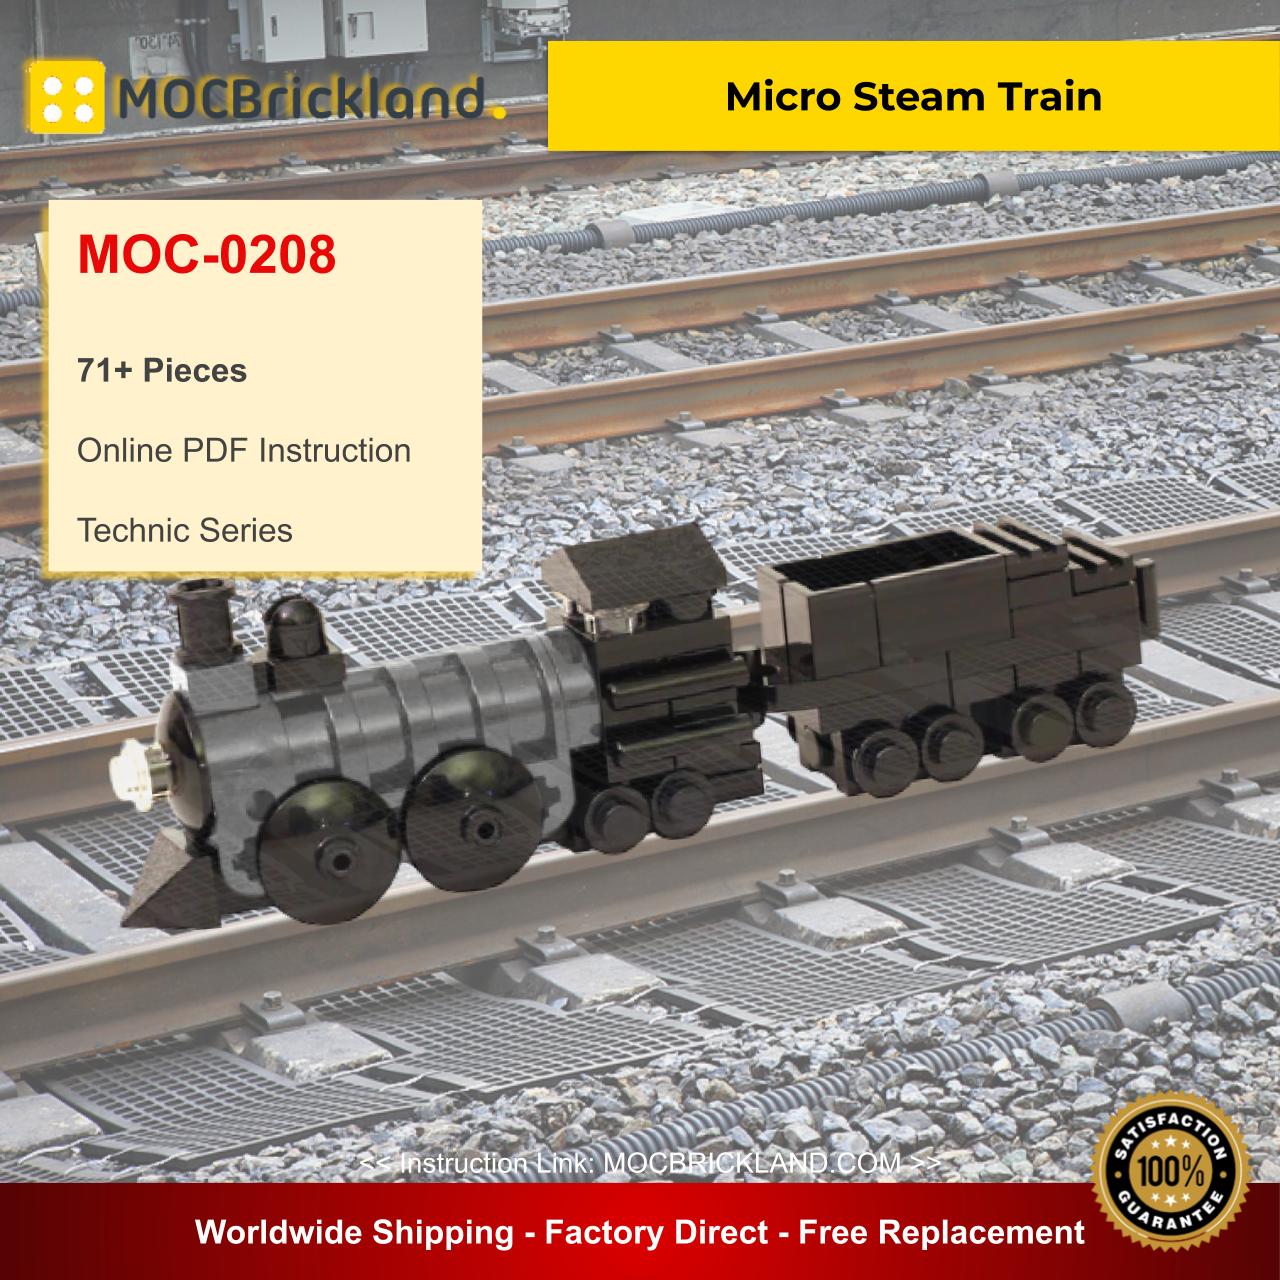 MOCBRICKLAND MOC-0208 Micro Steam Train